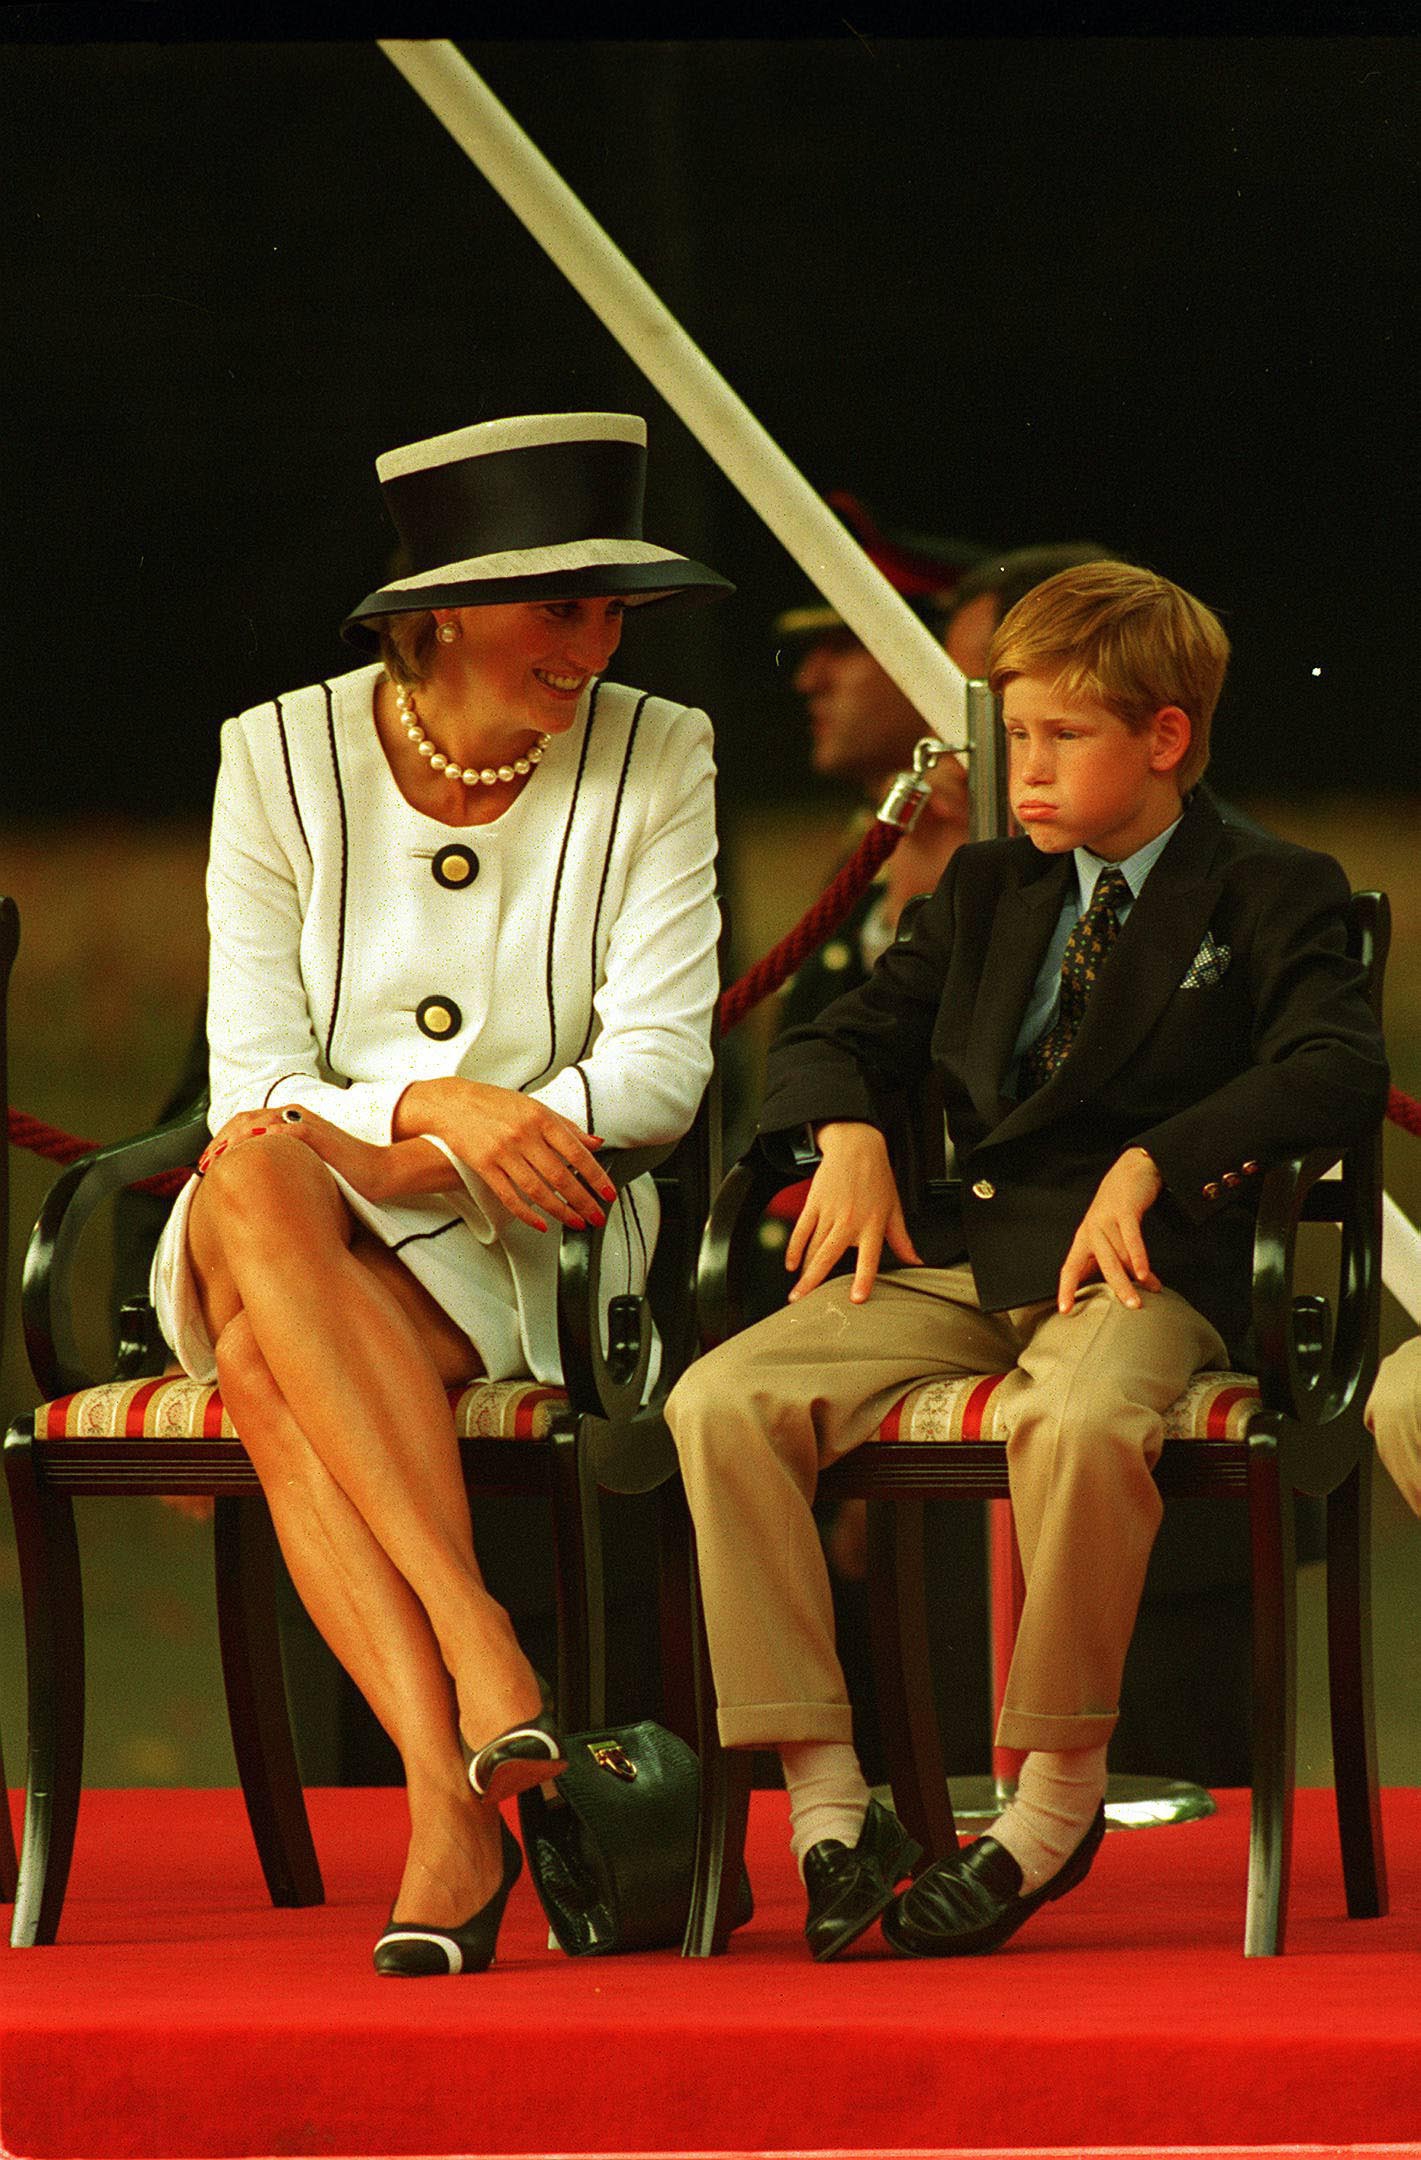 Prințesa Diana îmbrăcată ntr-un compleu alb elegant alcătuit din sacou și fustă participă la un eveniment alături de Prințul Harry îmbrăcat în pantaloni crem și sacou albastru